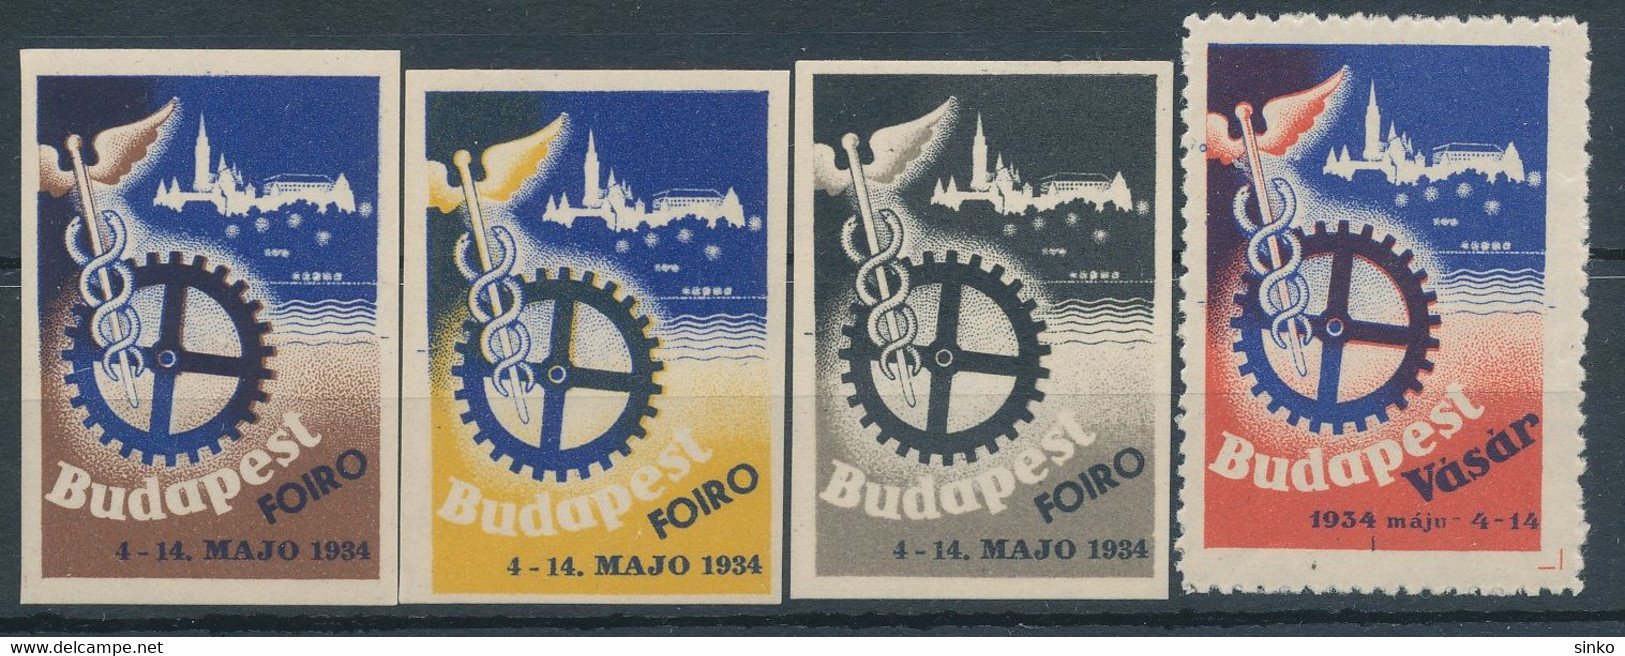 1934. Budapest Fair! - Foglietto Ricordo